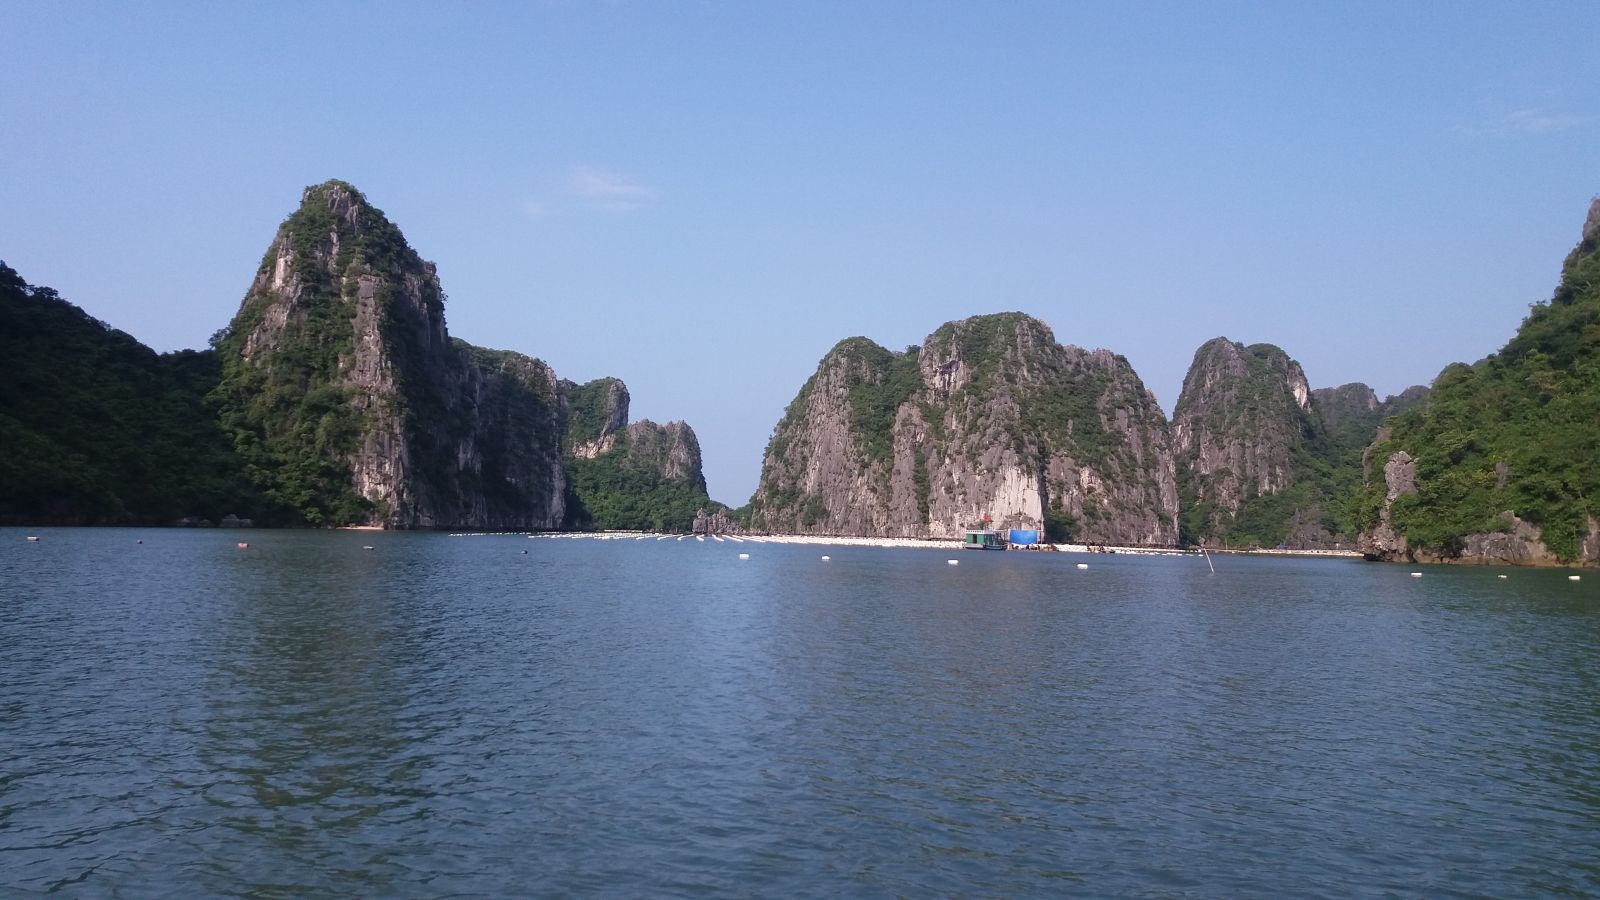 The view of Bai Tu Long bay en route to Quan Lan island